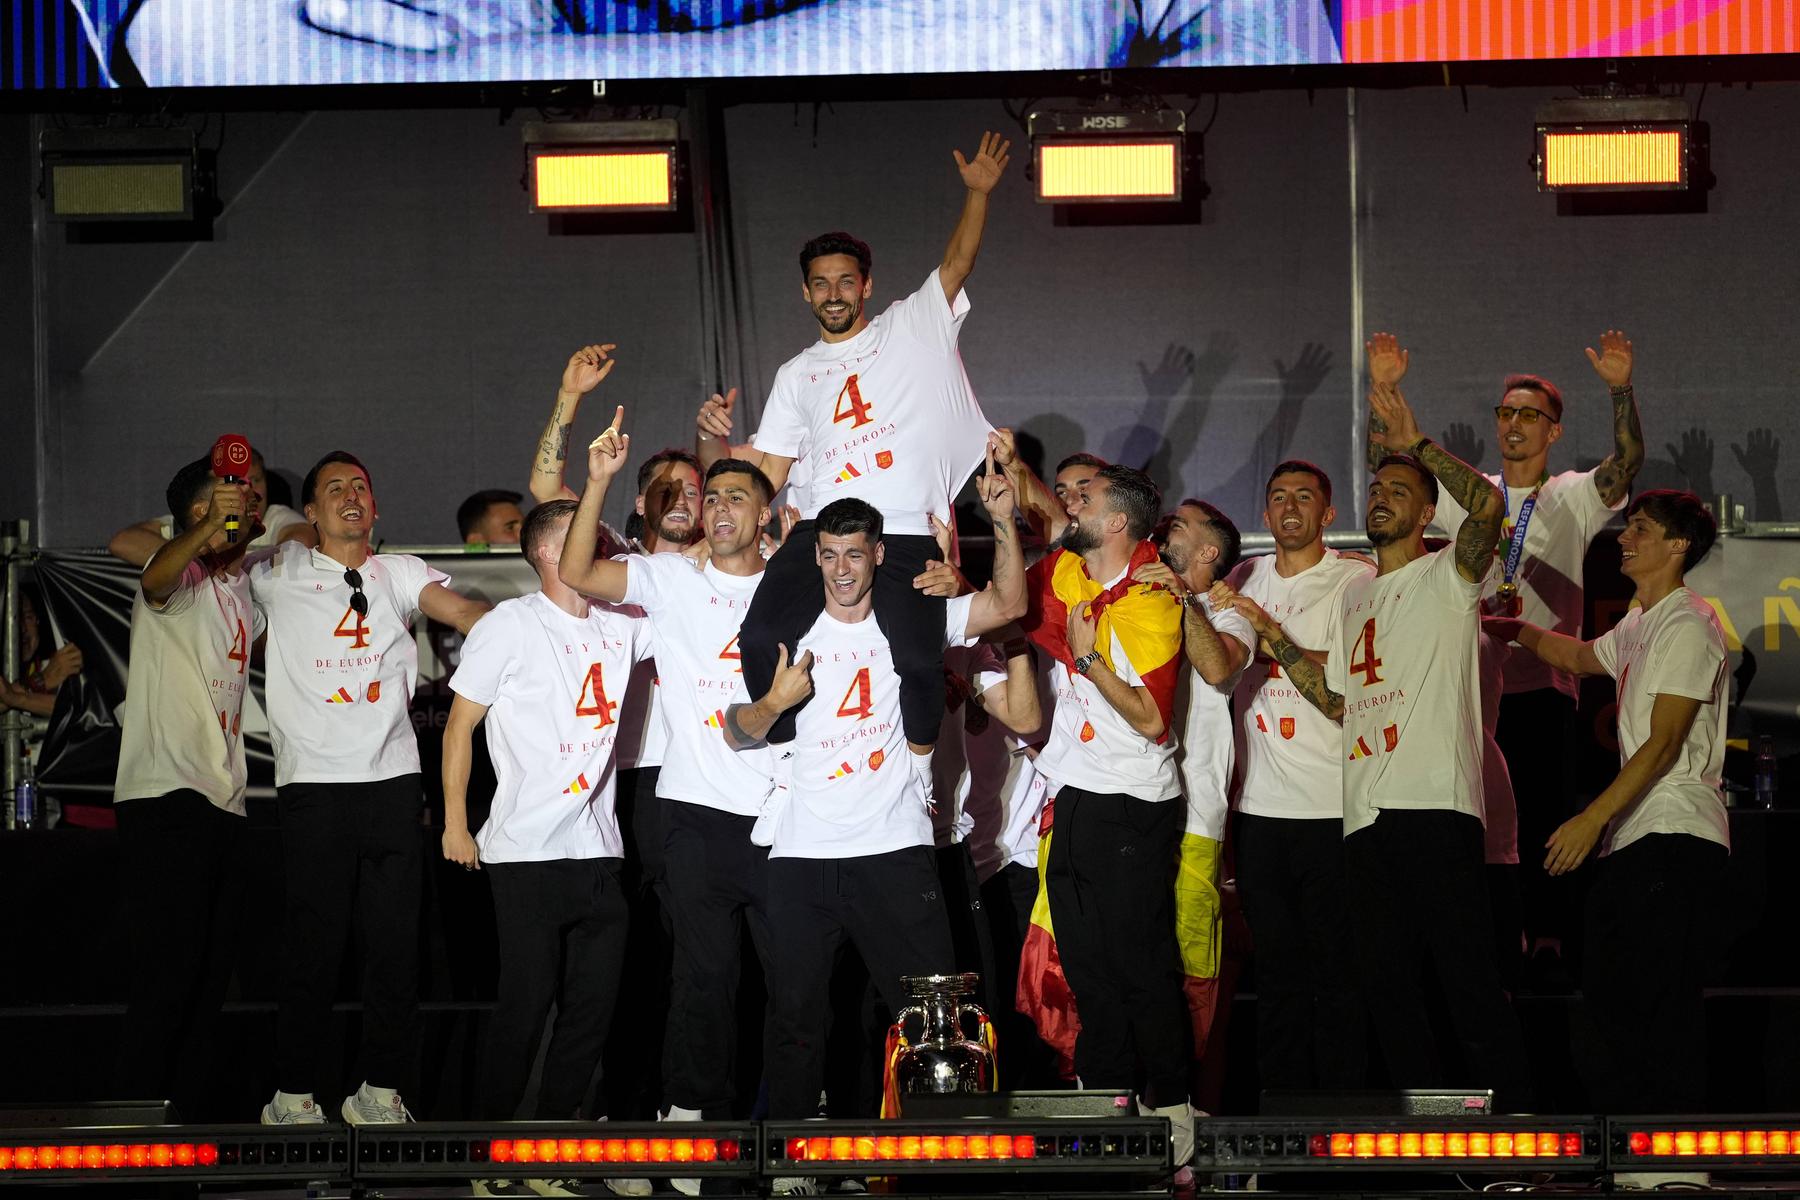 Party des Europameisters: Leichte Misstöne und schiefe Gesänge bei Spaniens EM-Feier